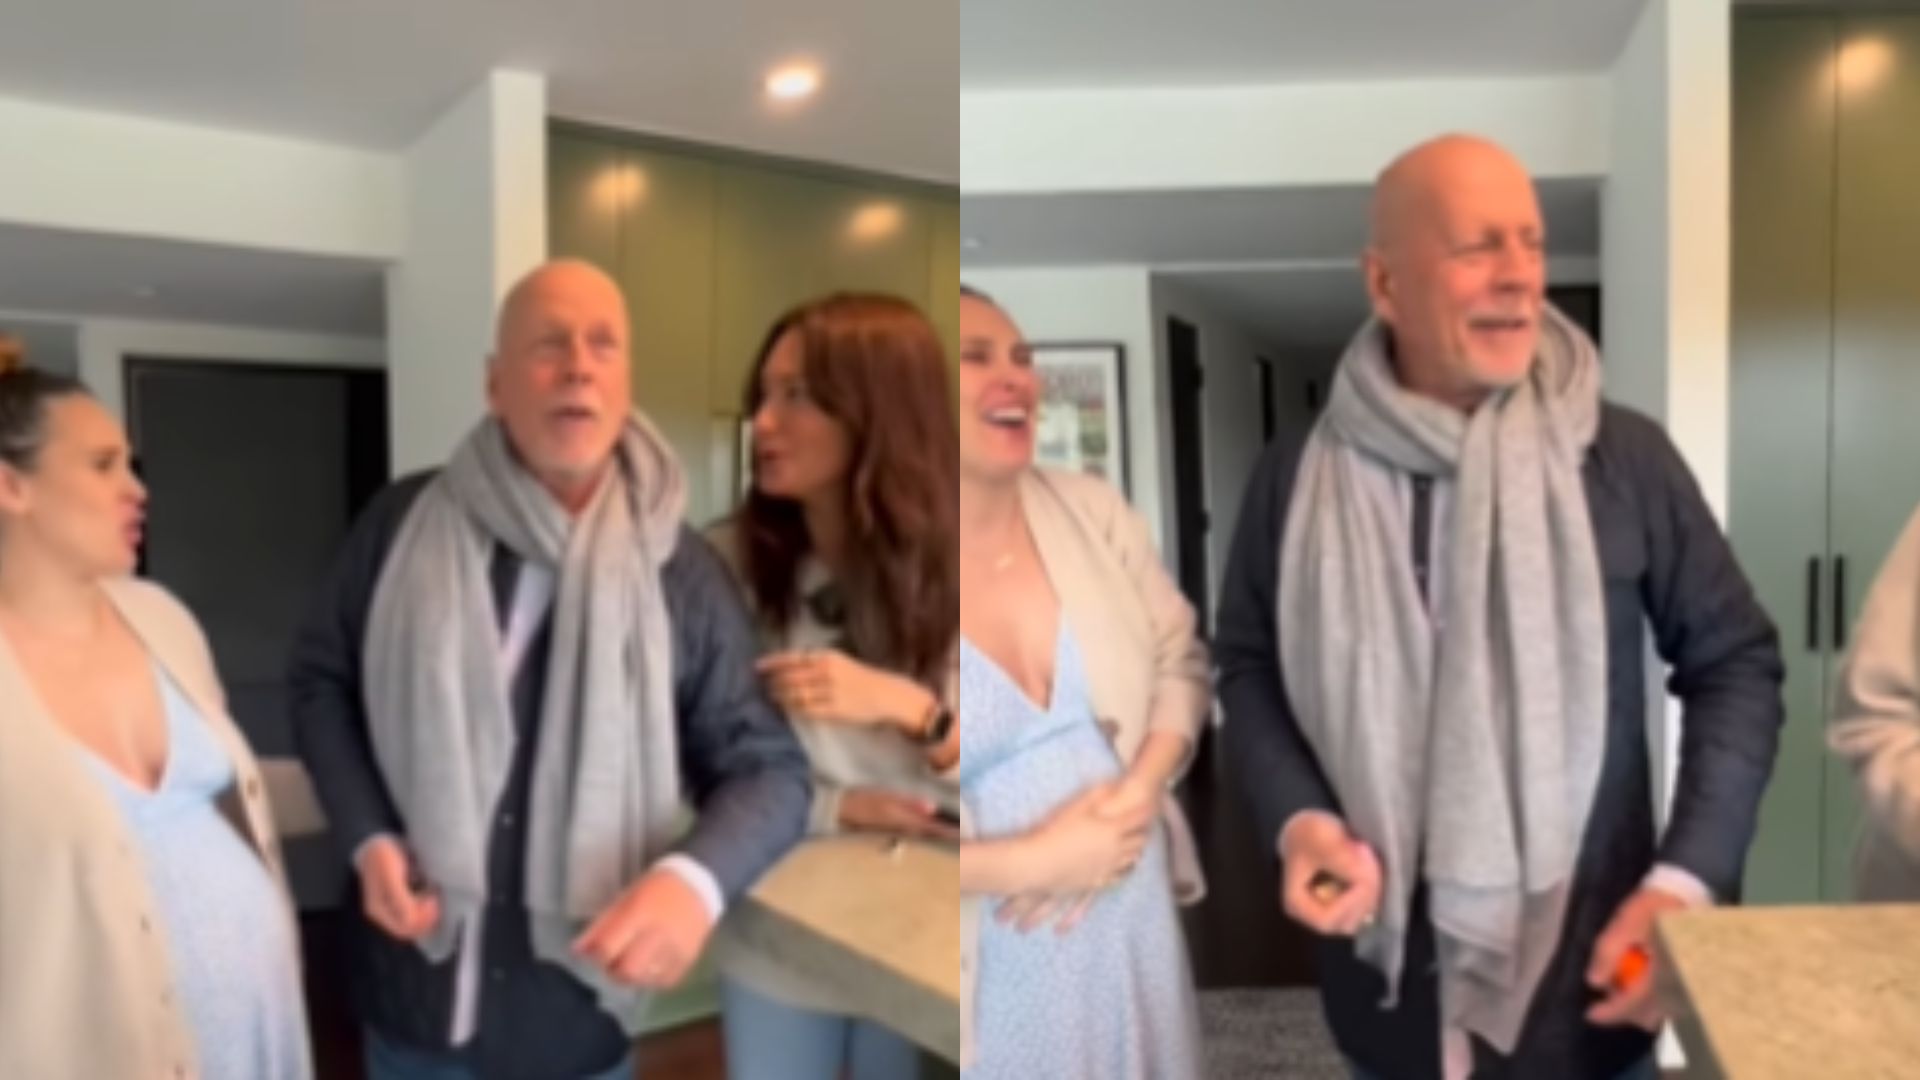 Mulher do ator chorou ao falar sobre Bruce Willis nas redes; comemoração teve presença de Demi Moore, que publicou vídeo do momento